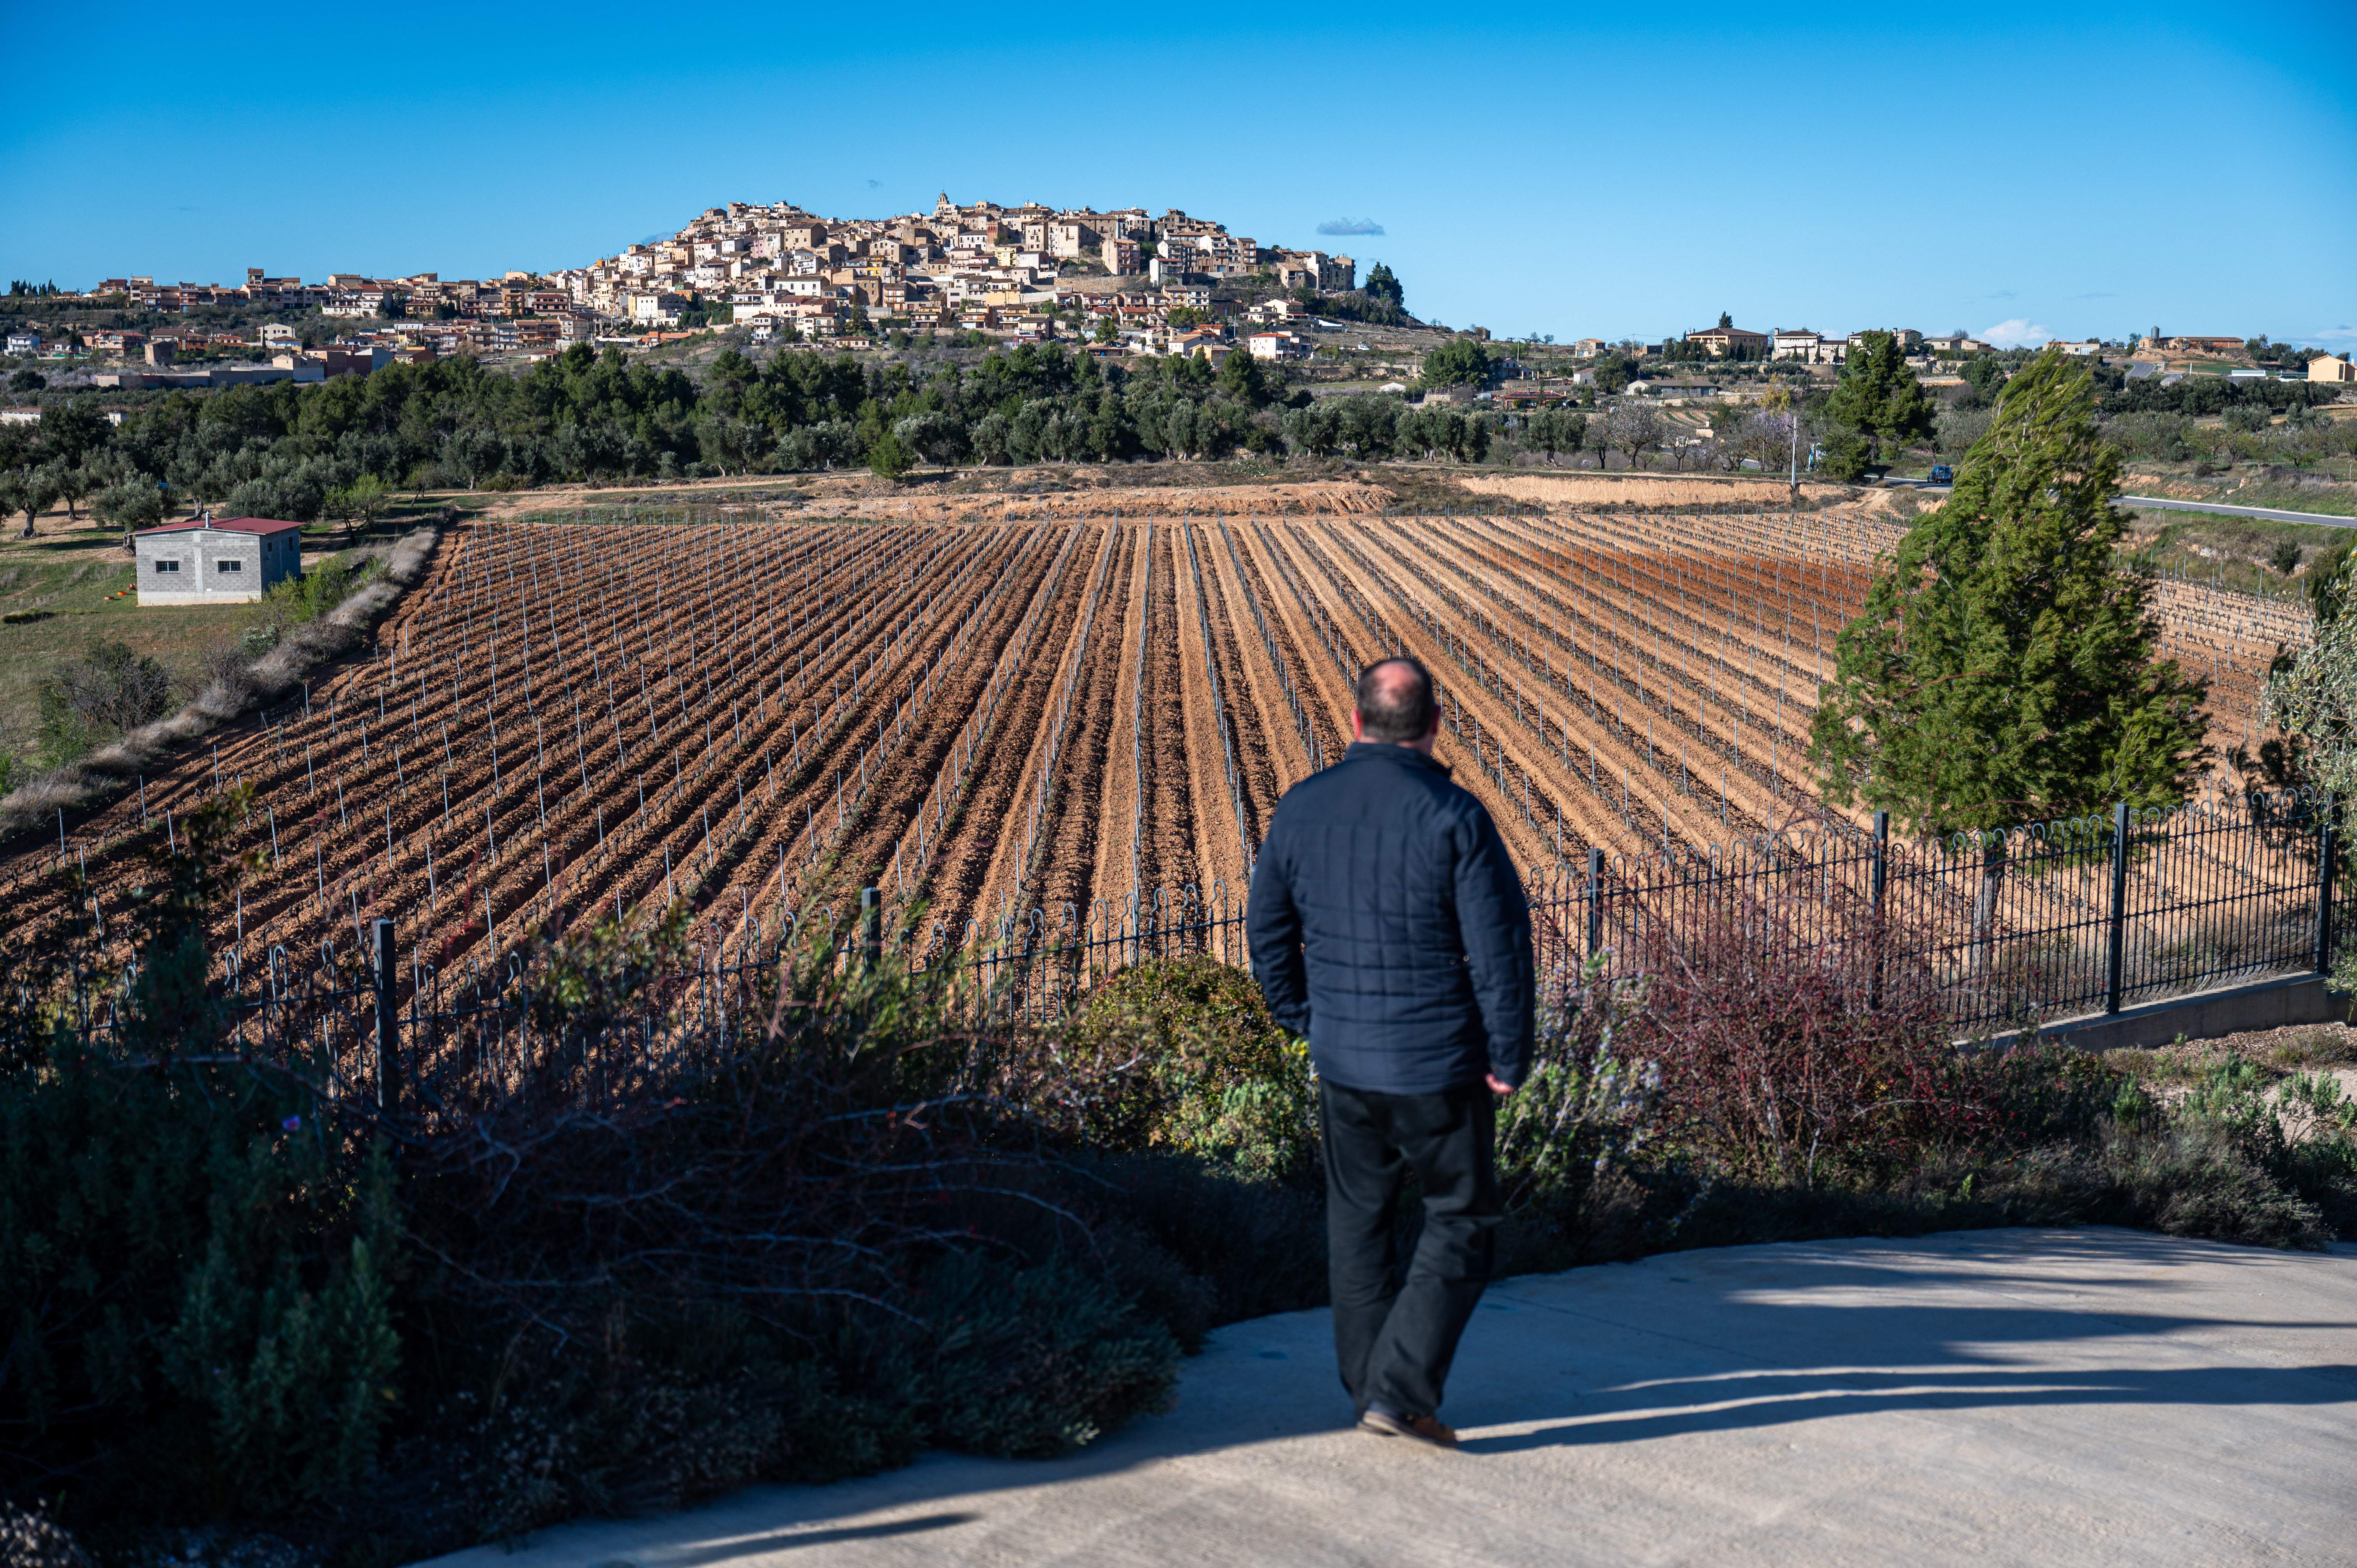 El viaje de Oriol Junqueras a las Terres de l'Ebre: el sur profundo y despoblado de Catalunya